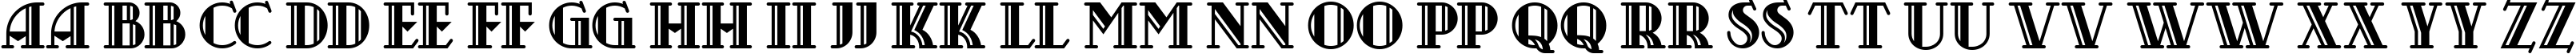 Пример написания английского алфавита шрифтом Castileo Medium